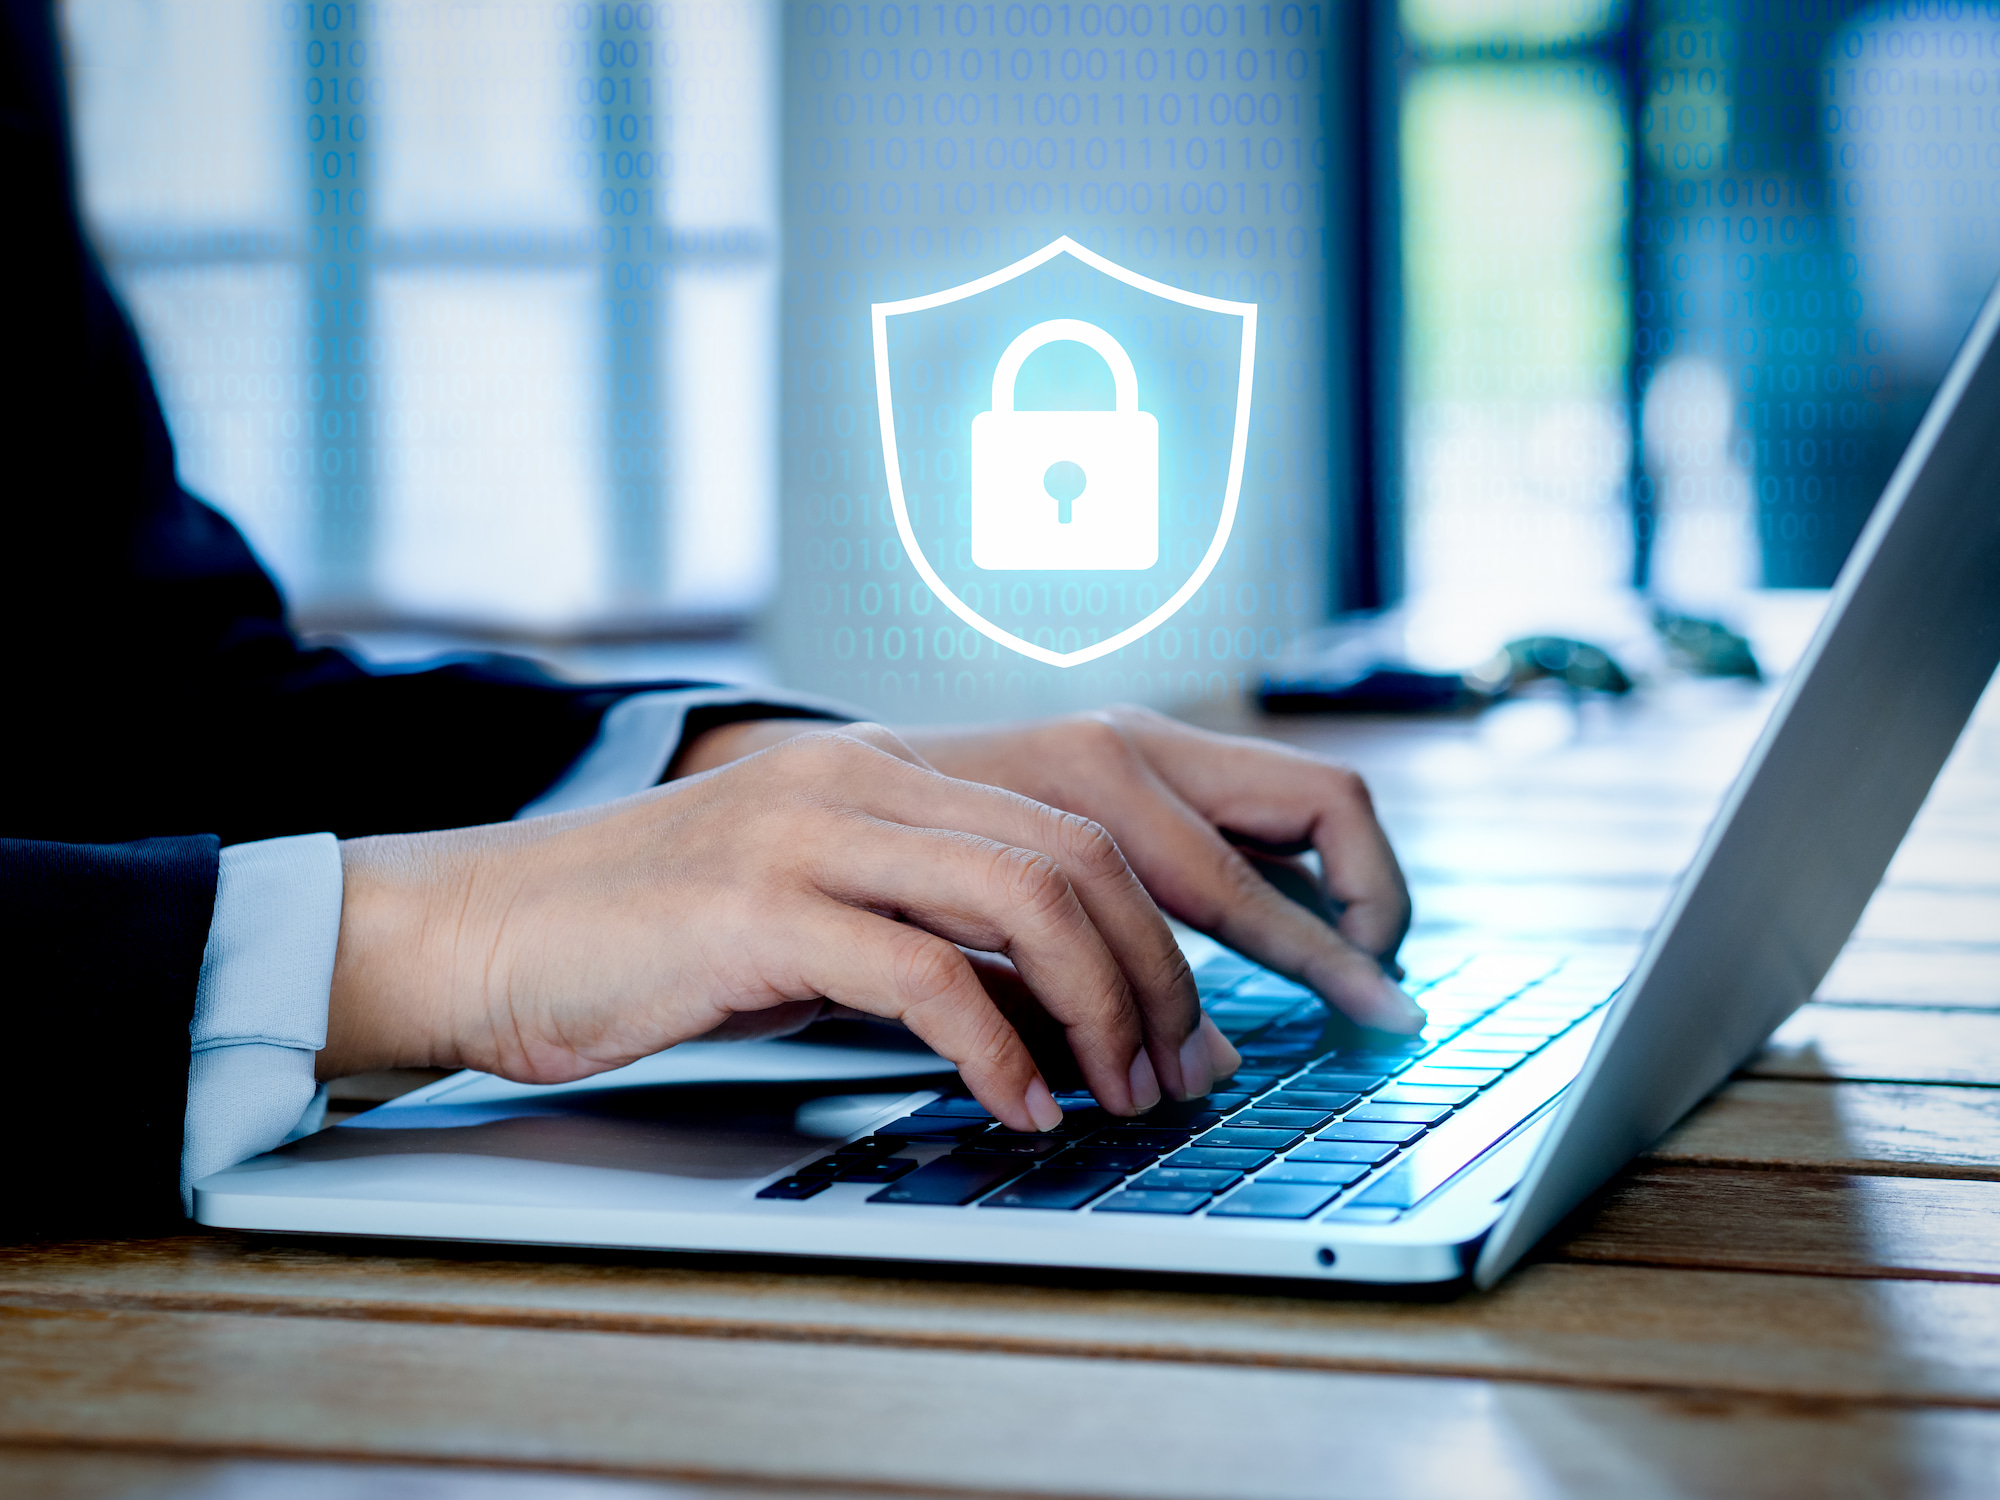 Seguridad informática: Hombre escribiendo en un portátil con un símbolo flotante de un candado dentro de un escudo representado la ciberseguridad